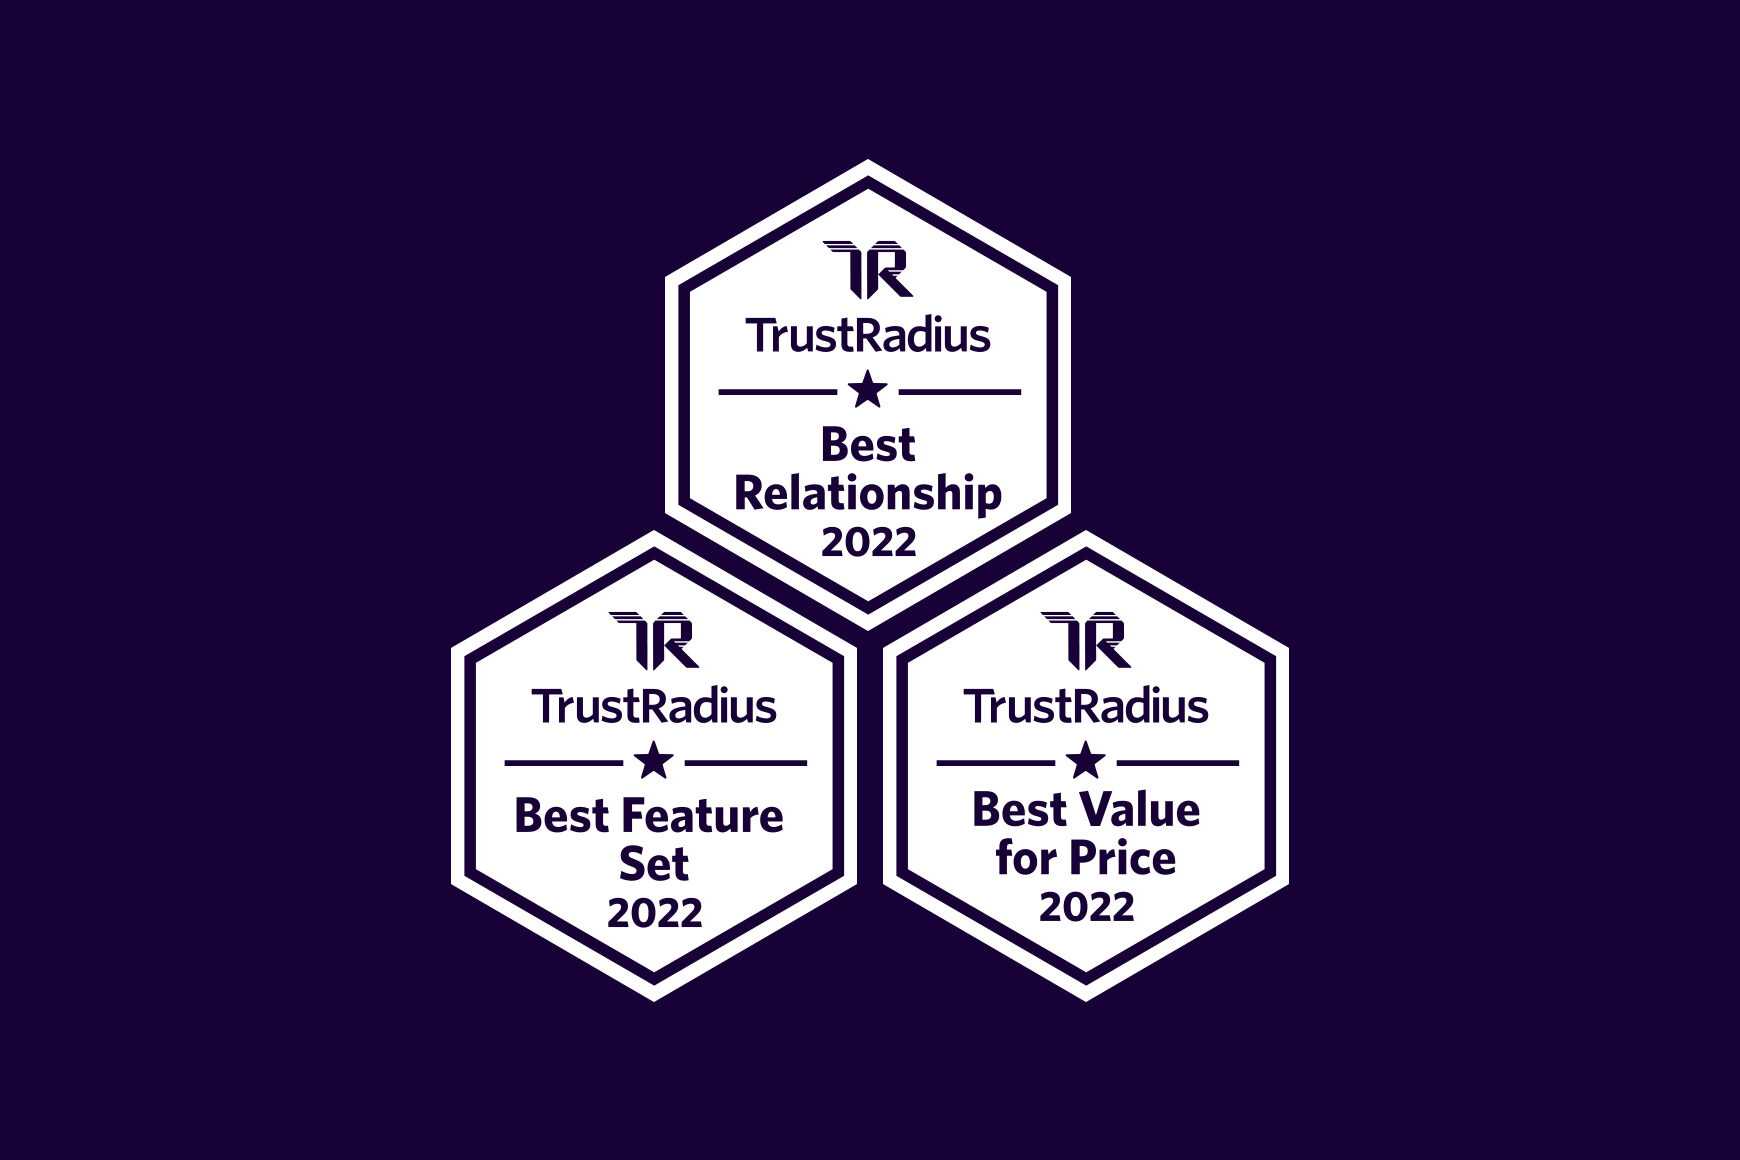 Talkdesk wins three 2022 Best Of Awards from TrustRadius